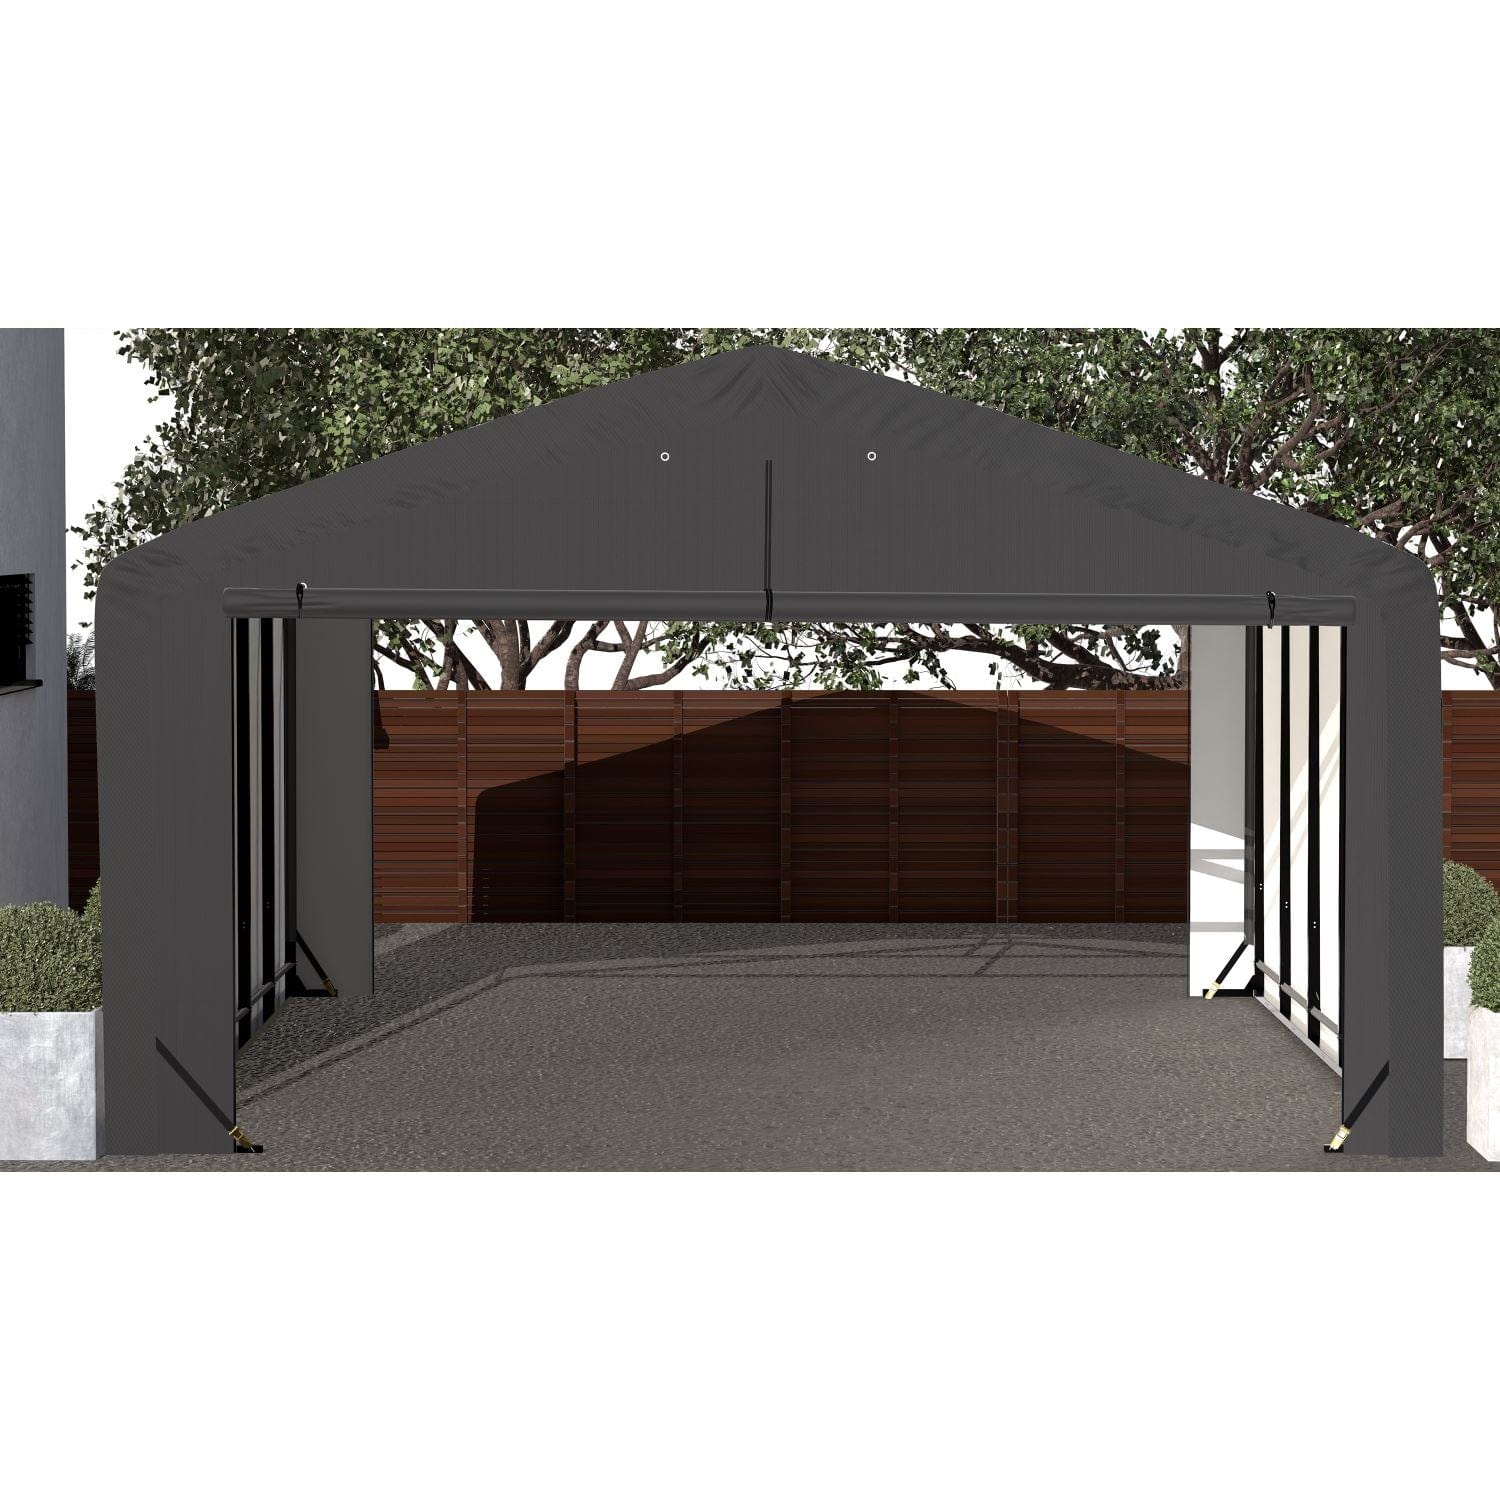 ShelterLogic Portable Garage ShelterLogic | ShelterTube Wind and Snow-Load Rated Garage 20x23x12 Gray SQAADD0103C02002312